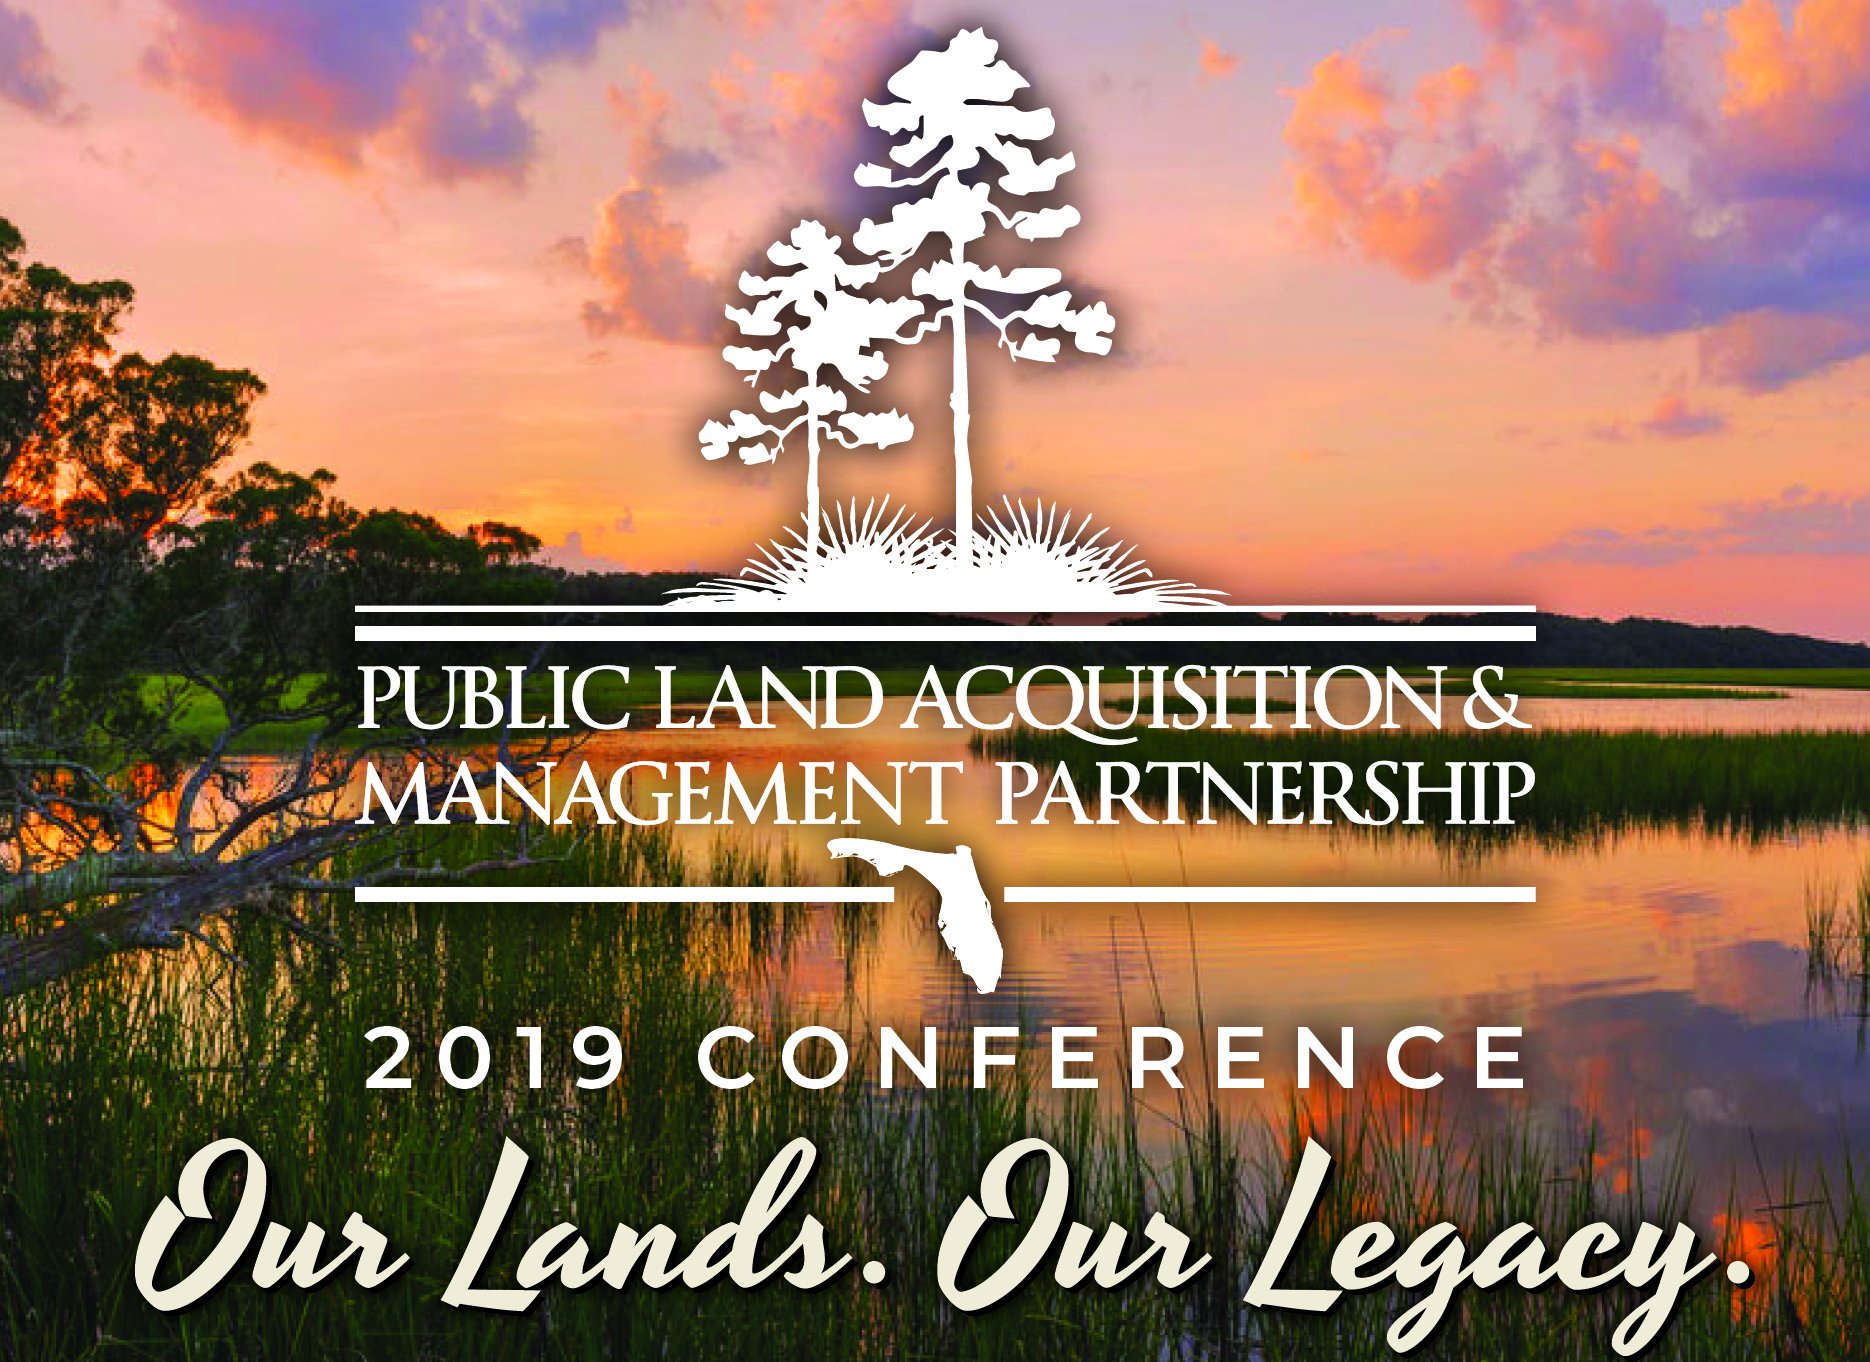 Public Land Acquisition & Management Partnership 2019 Conference